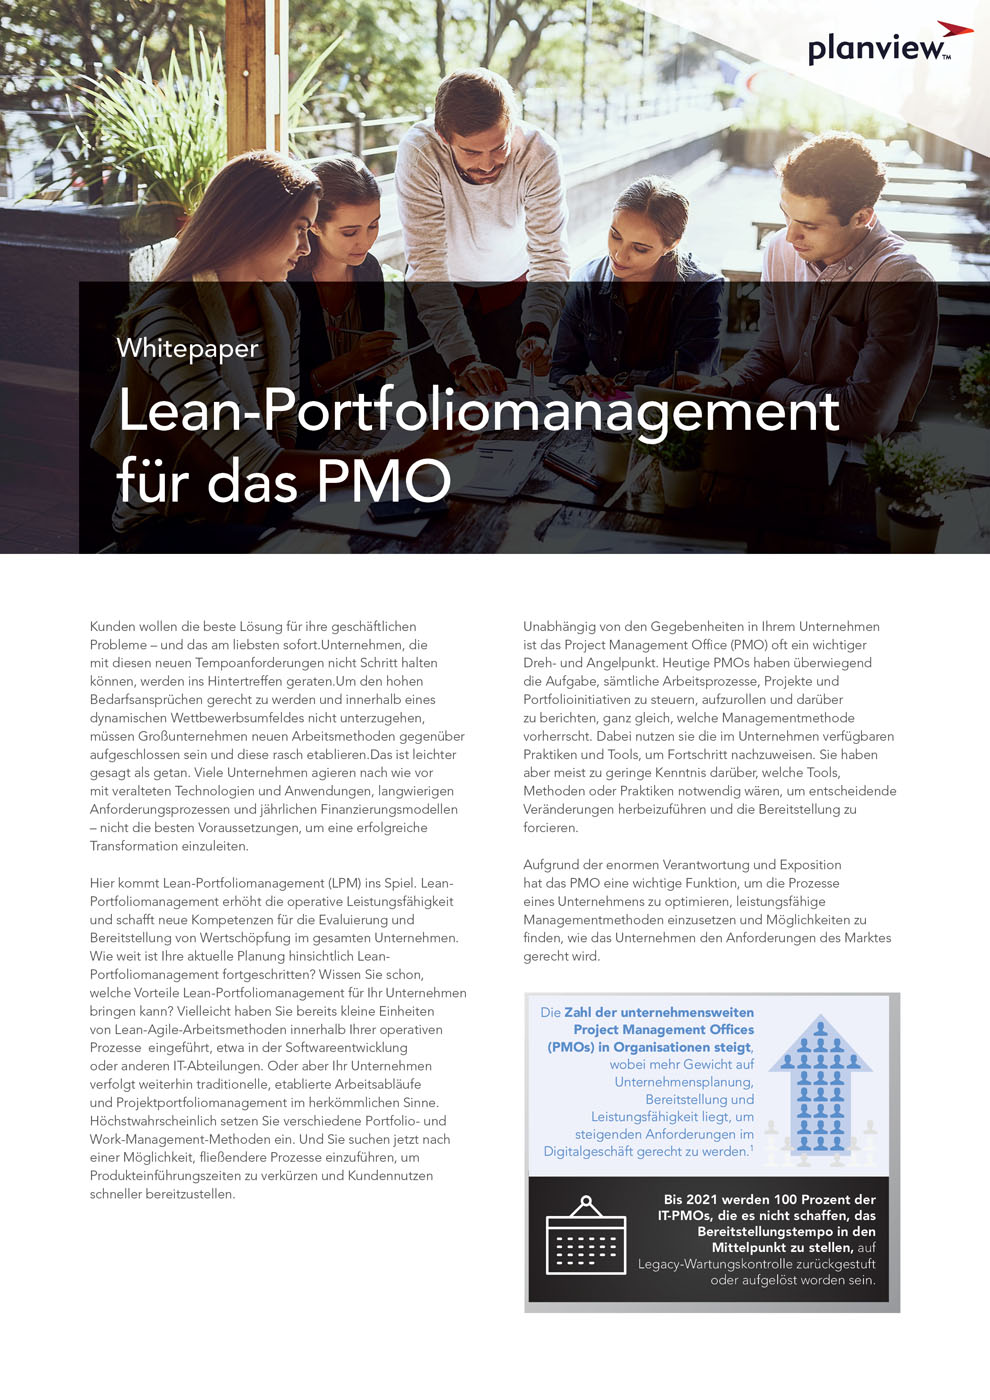 Lean-Portfoliomanagement für das PMO